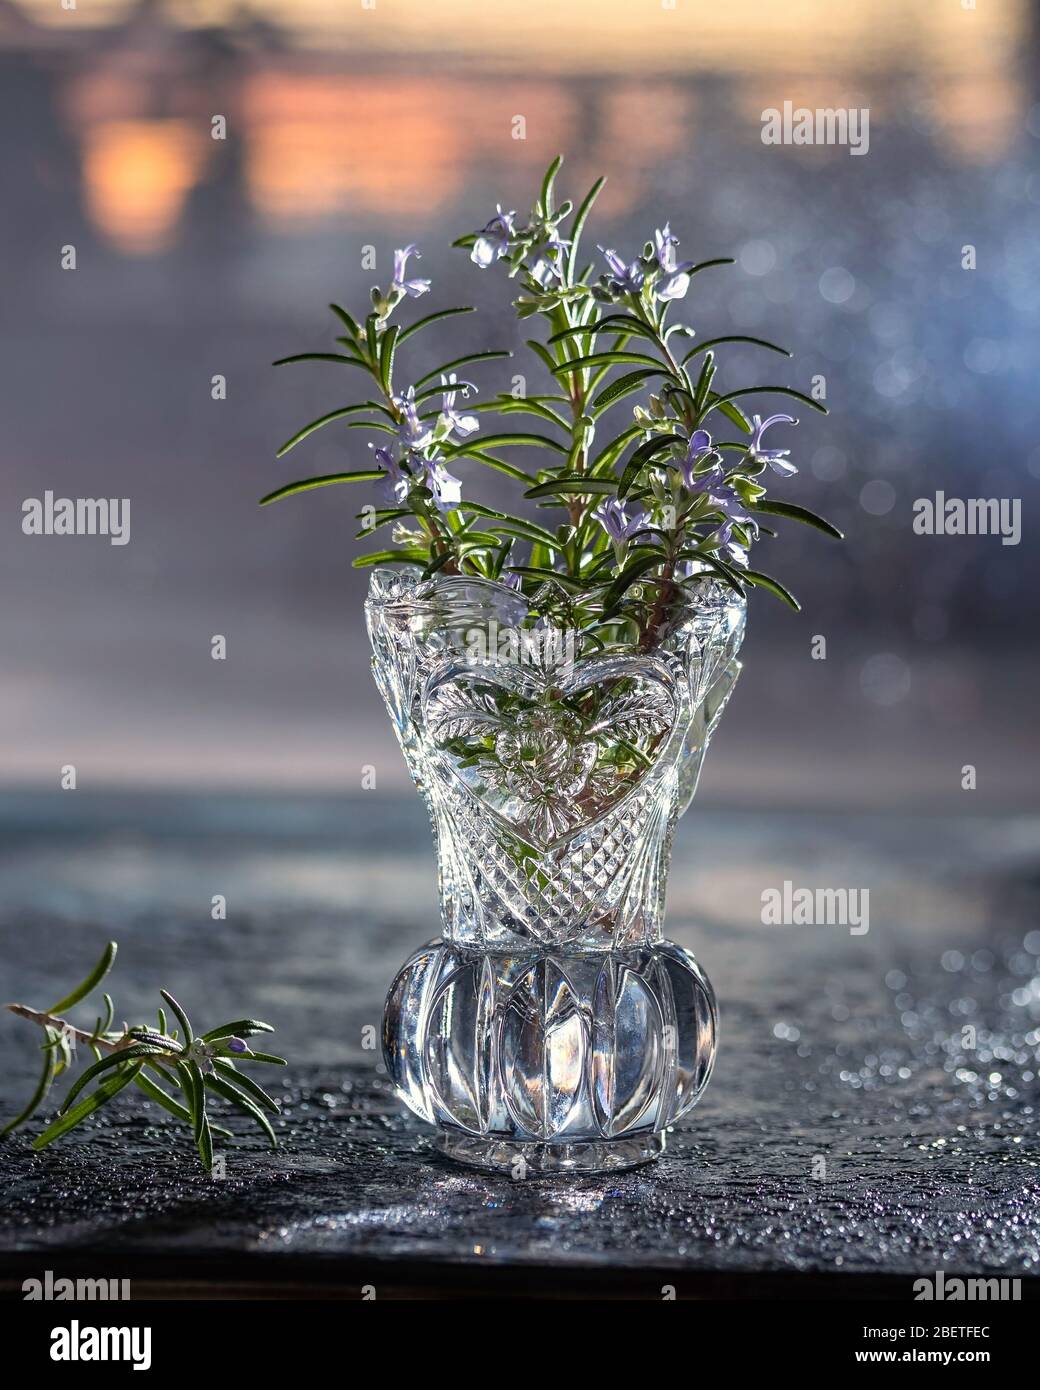 Planta de romero fresca en flor en un jarrón hecho de vidrio cortado Foto de stock